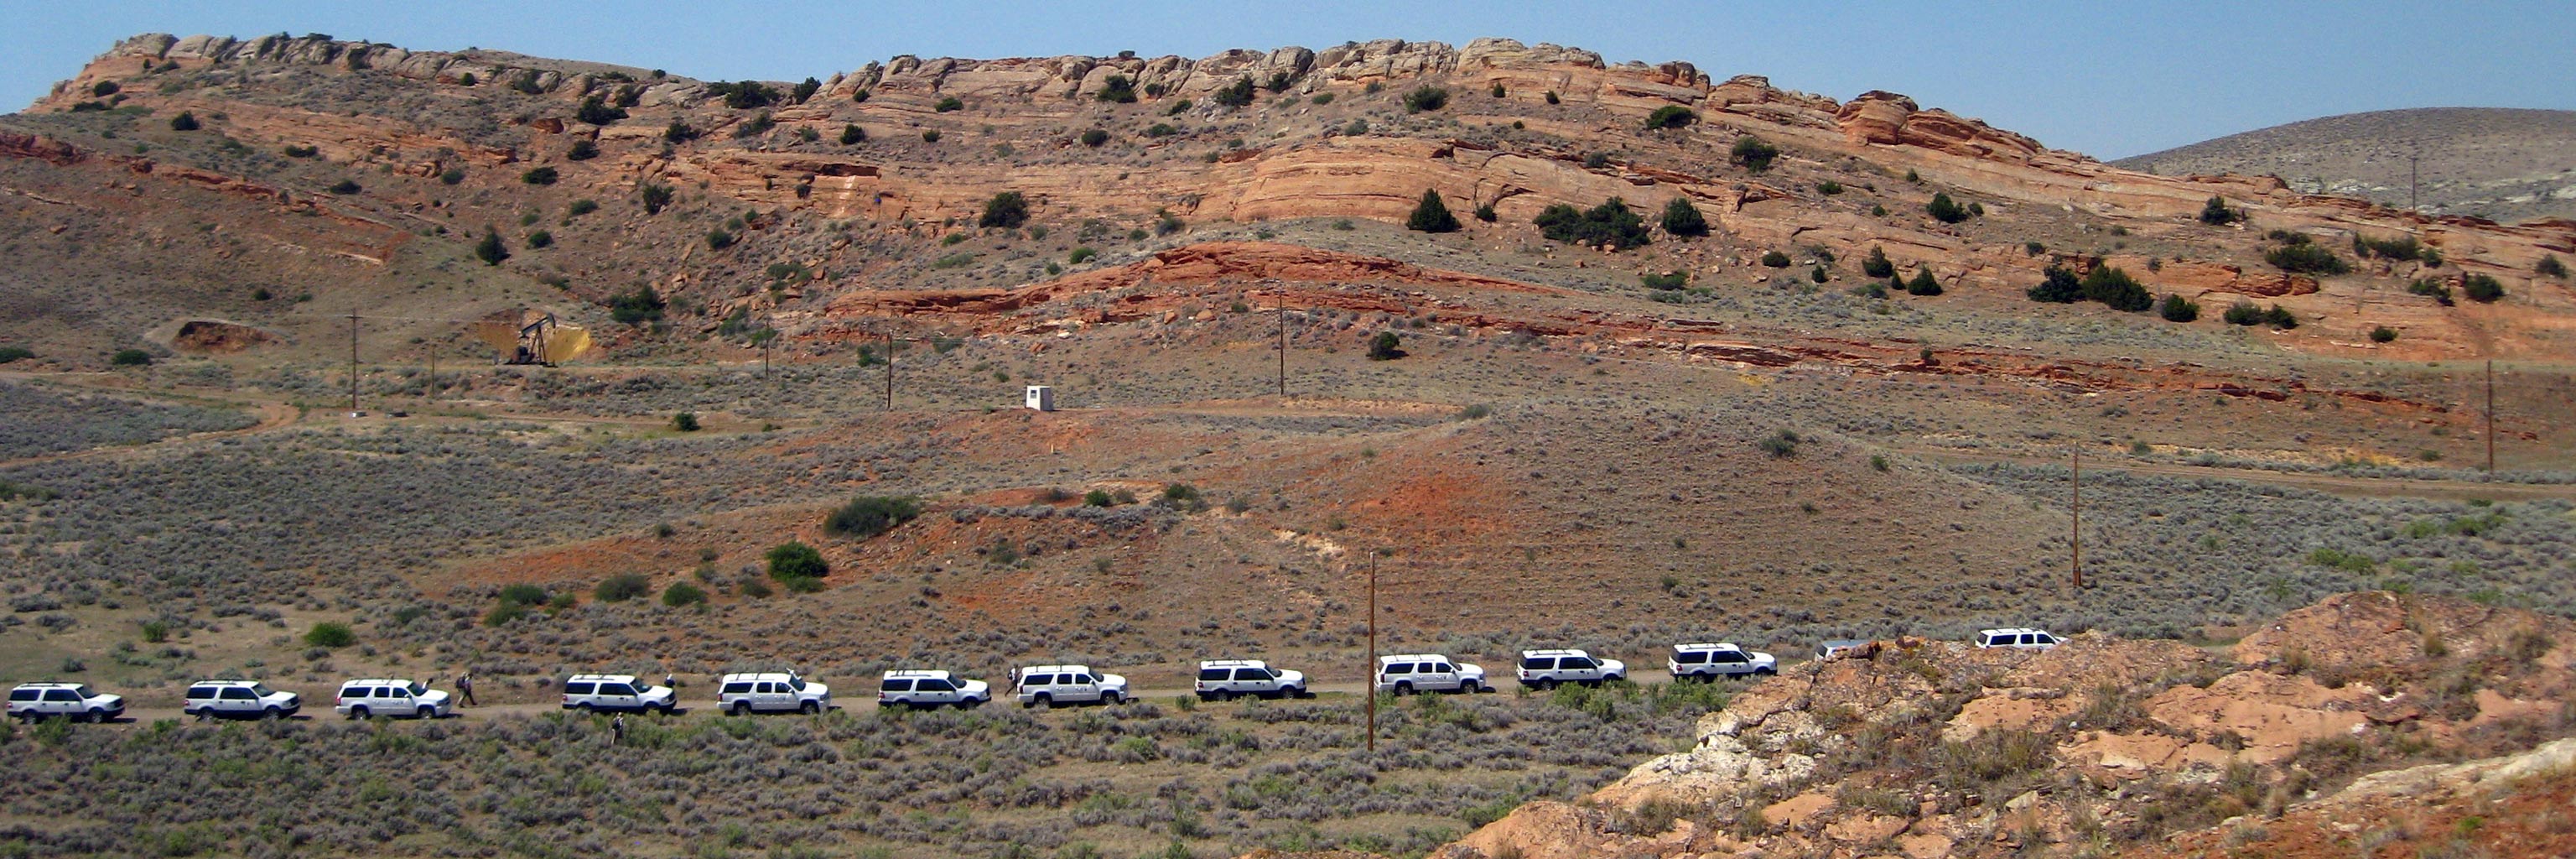 line of trucks on desert road